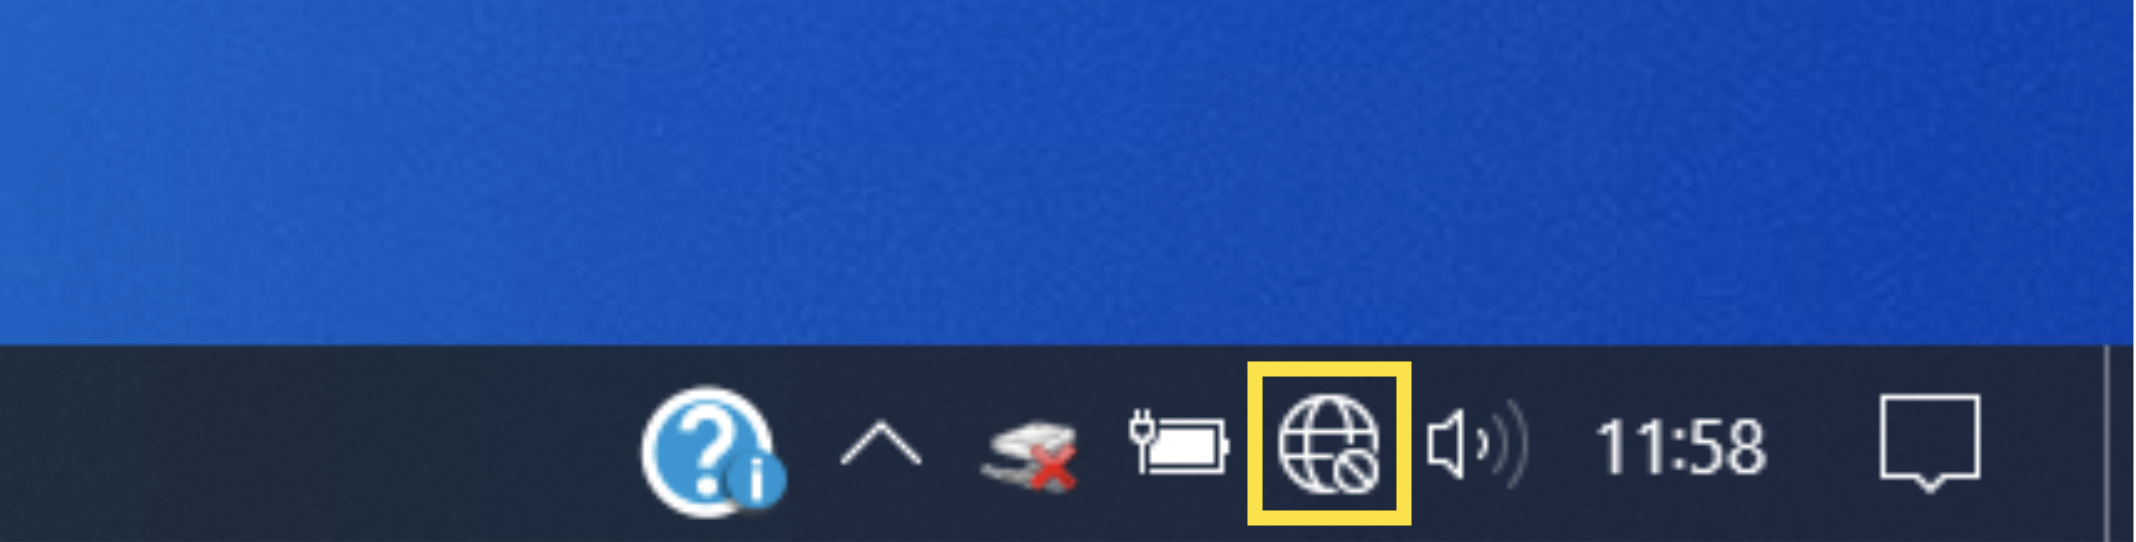 Icône de connexion à internet sous Windows 10